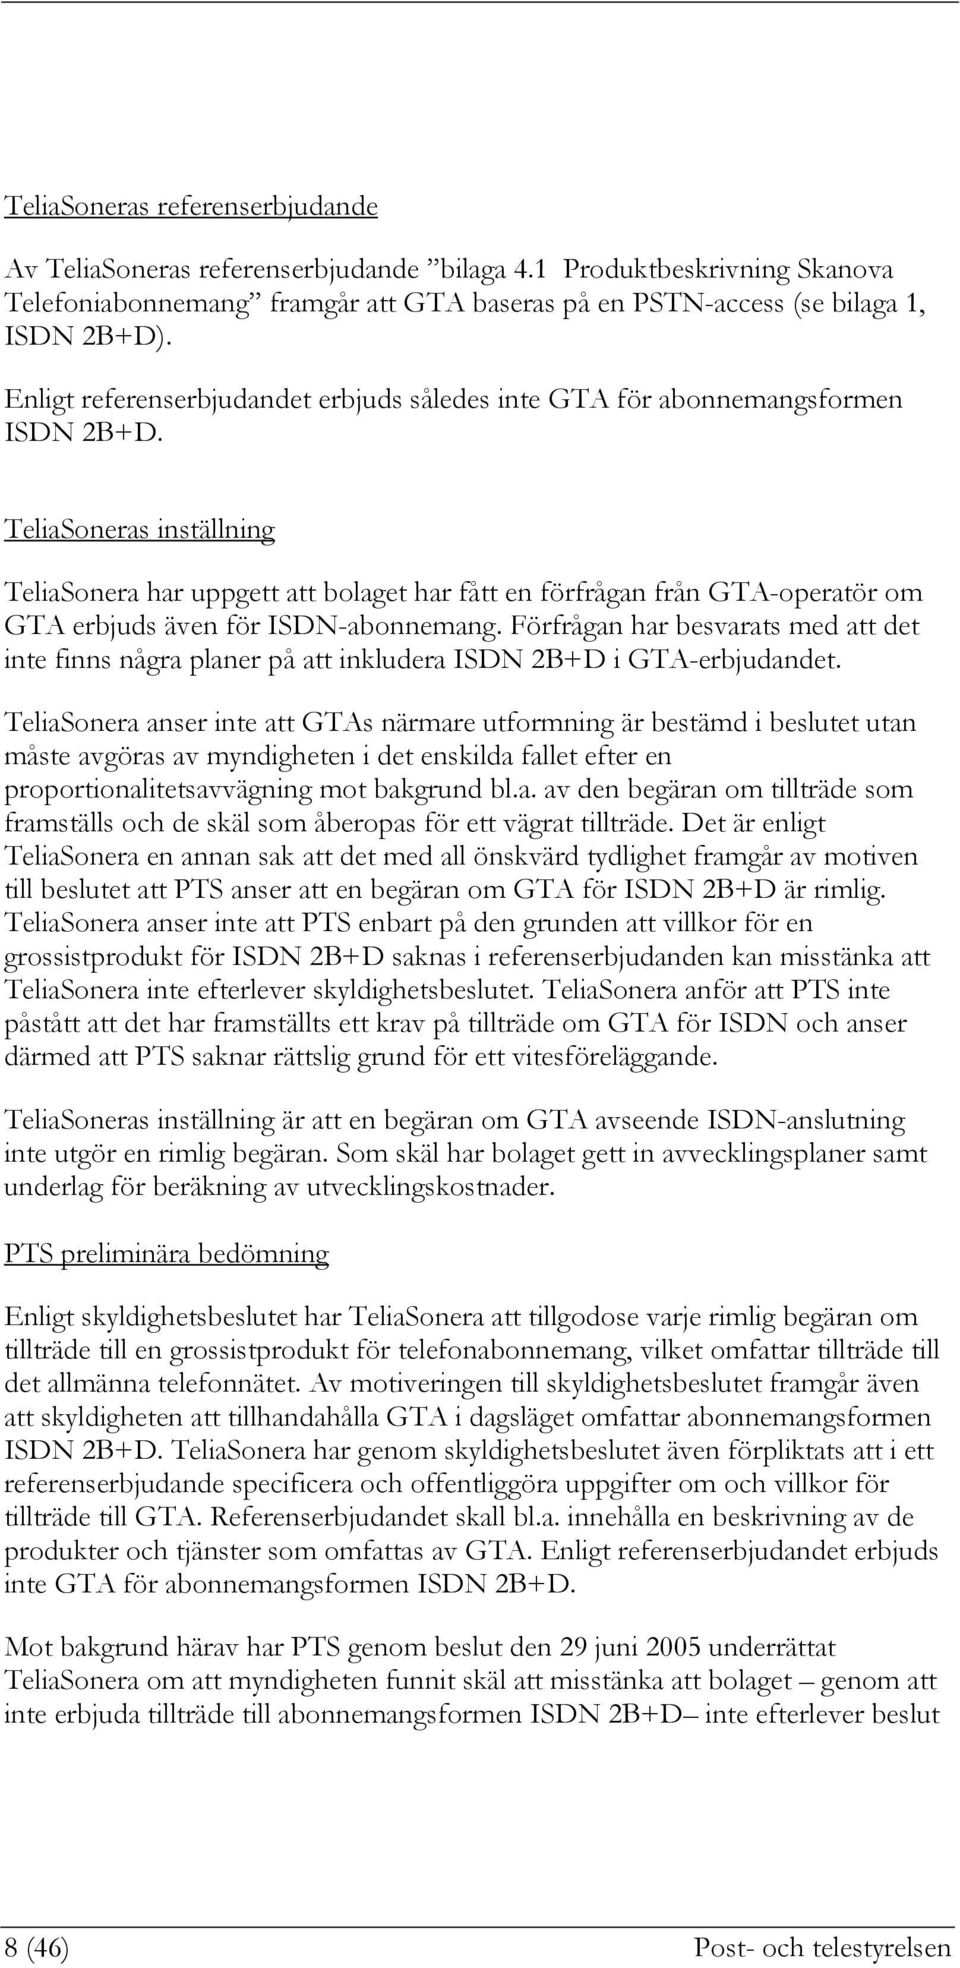 TeliaSoneras inställning TeliaSonera har uppgett att bolaget har fått en förfrågan från GTA-operatör om GTA erbjuds även för ISDN-abonnemang.